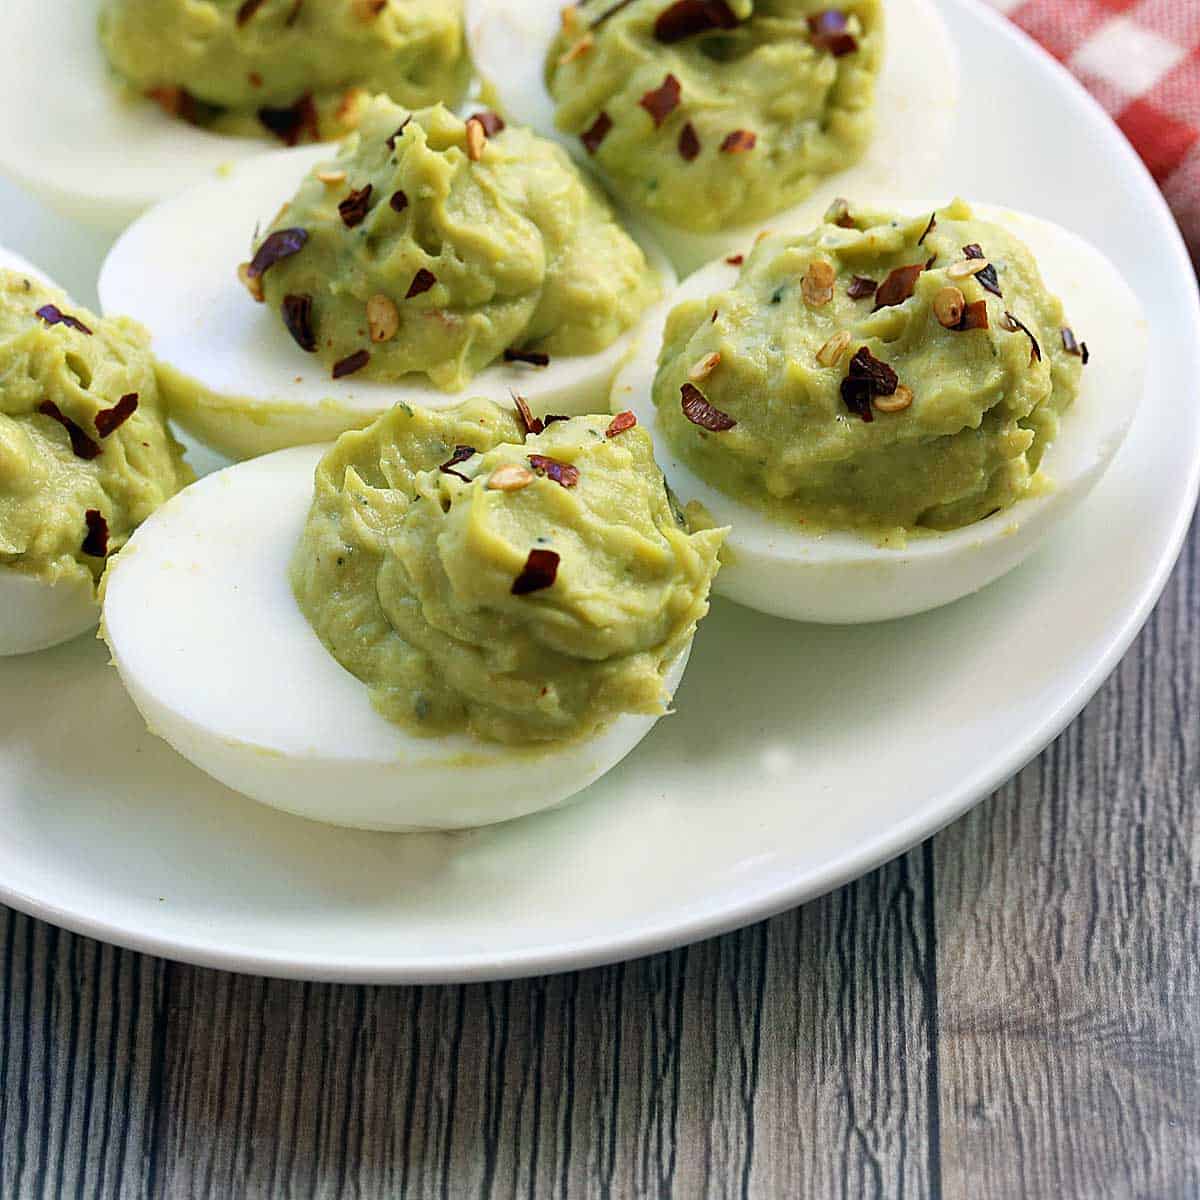 https://healthyrecipesblogs.com/wp-content/uploads/2015/03/avocado-deviled-eggs-featured-2022.jpg